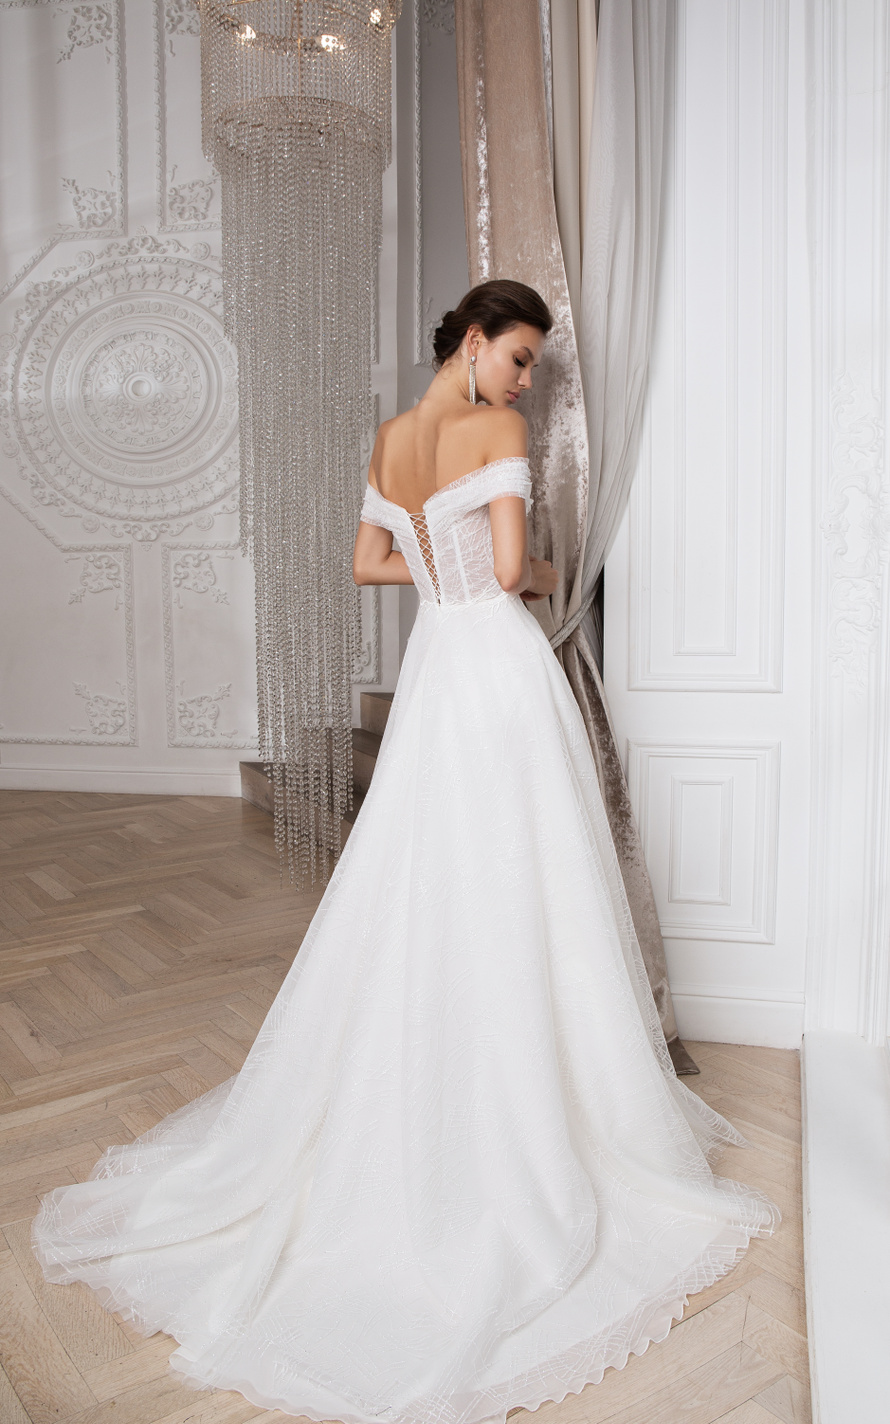 Купить свадебное платье «Ричи» Мэрри Марк из коллекции 2020 года в Нижнем Новгороде